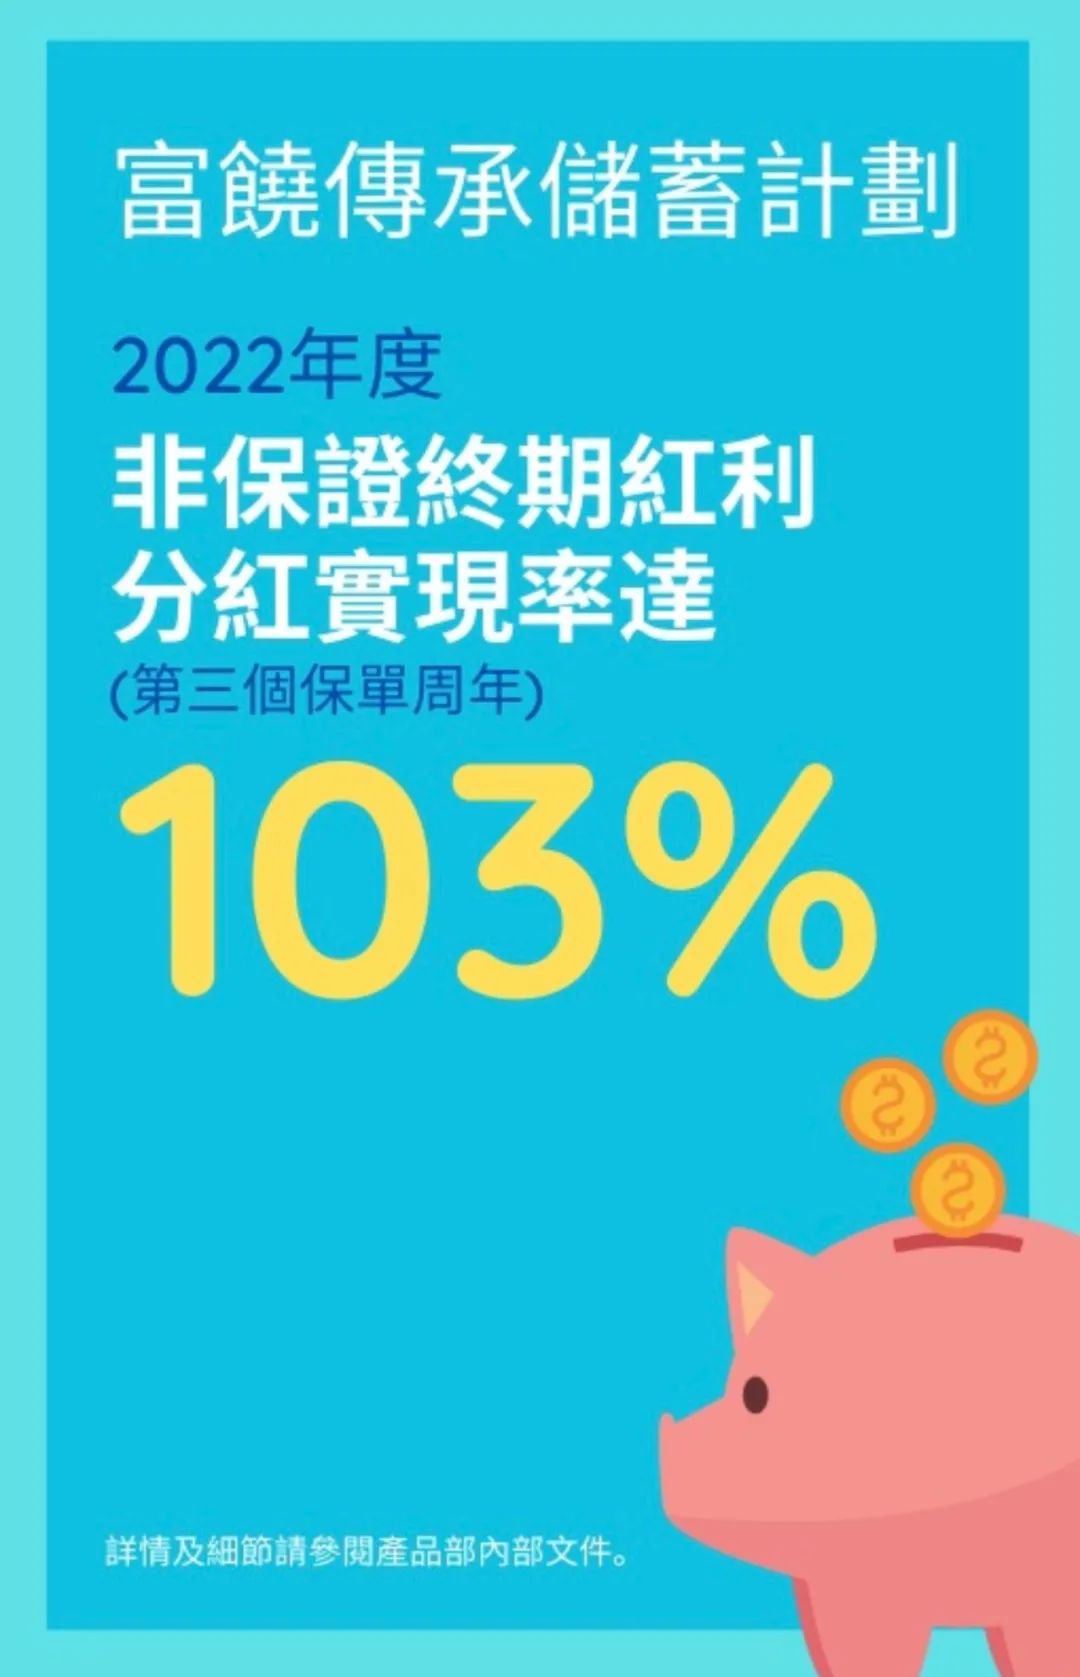 超预期！万通「富饶传承」2022年分红实现率达103%！